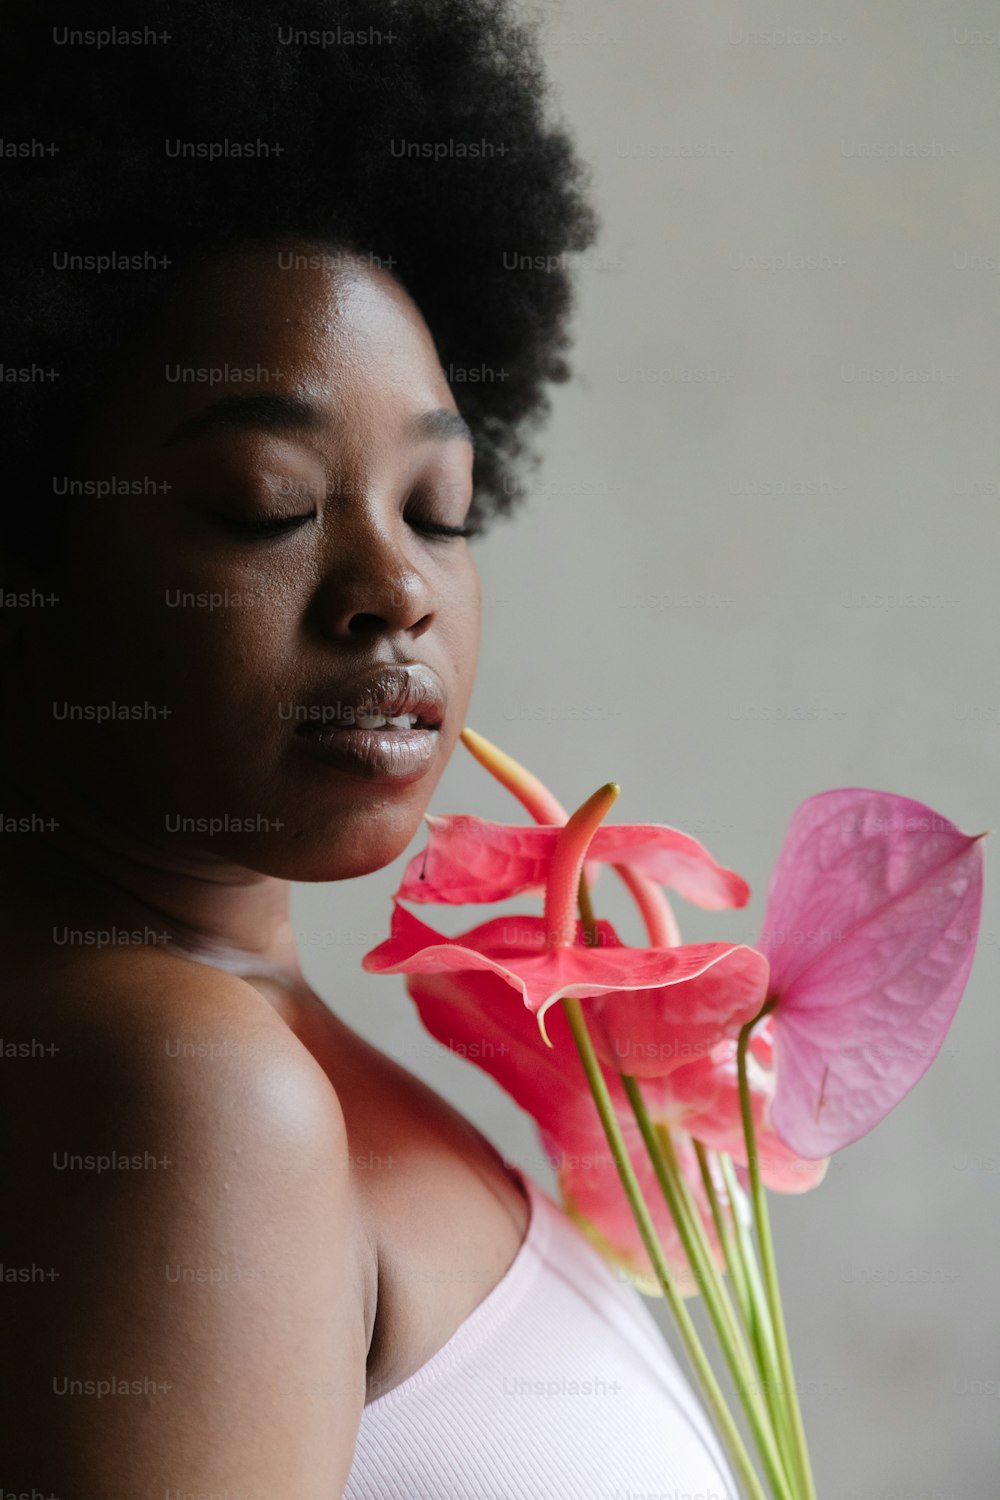 분홍색 꽃을 입에 물고 있는 여자